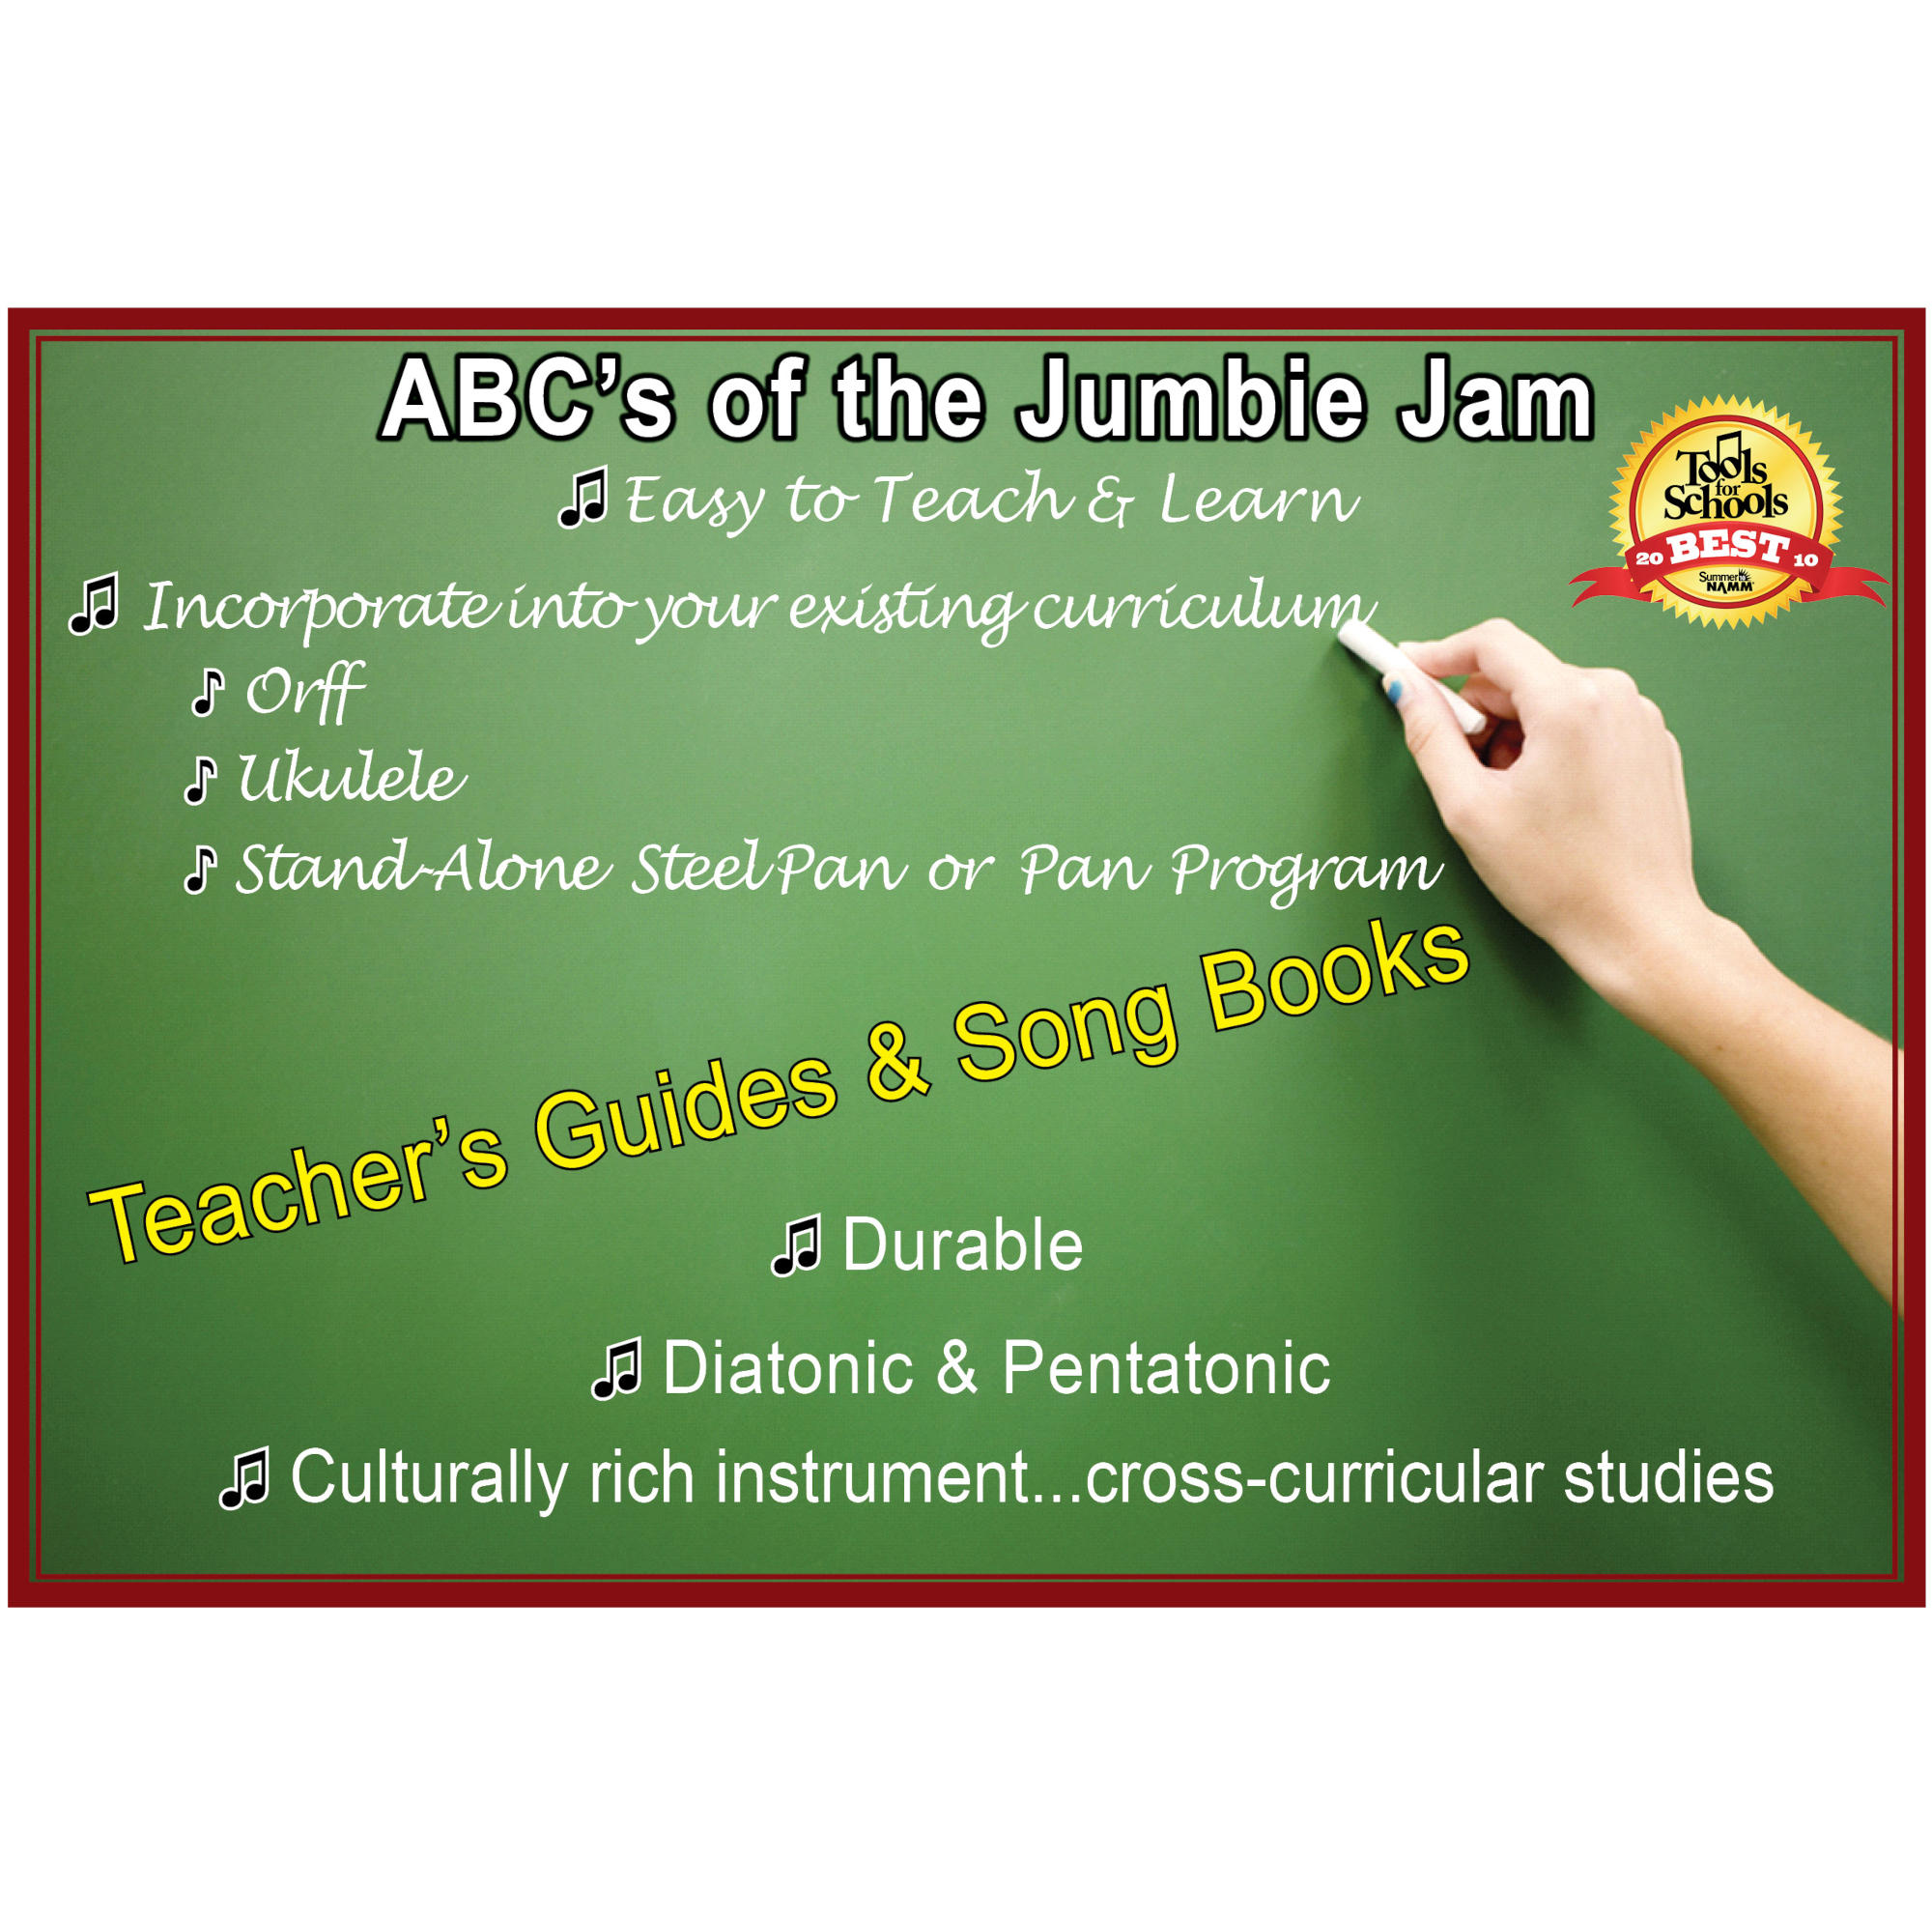 Panyard Jumbie Jam Steel Drum Educators 4-Pack - Tube Floor Stands (fun feet base) - Purple Pans (G)